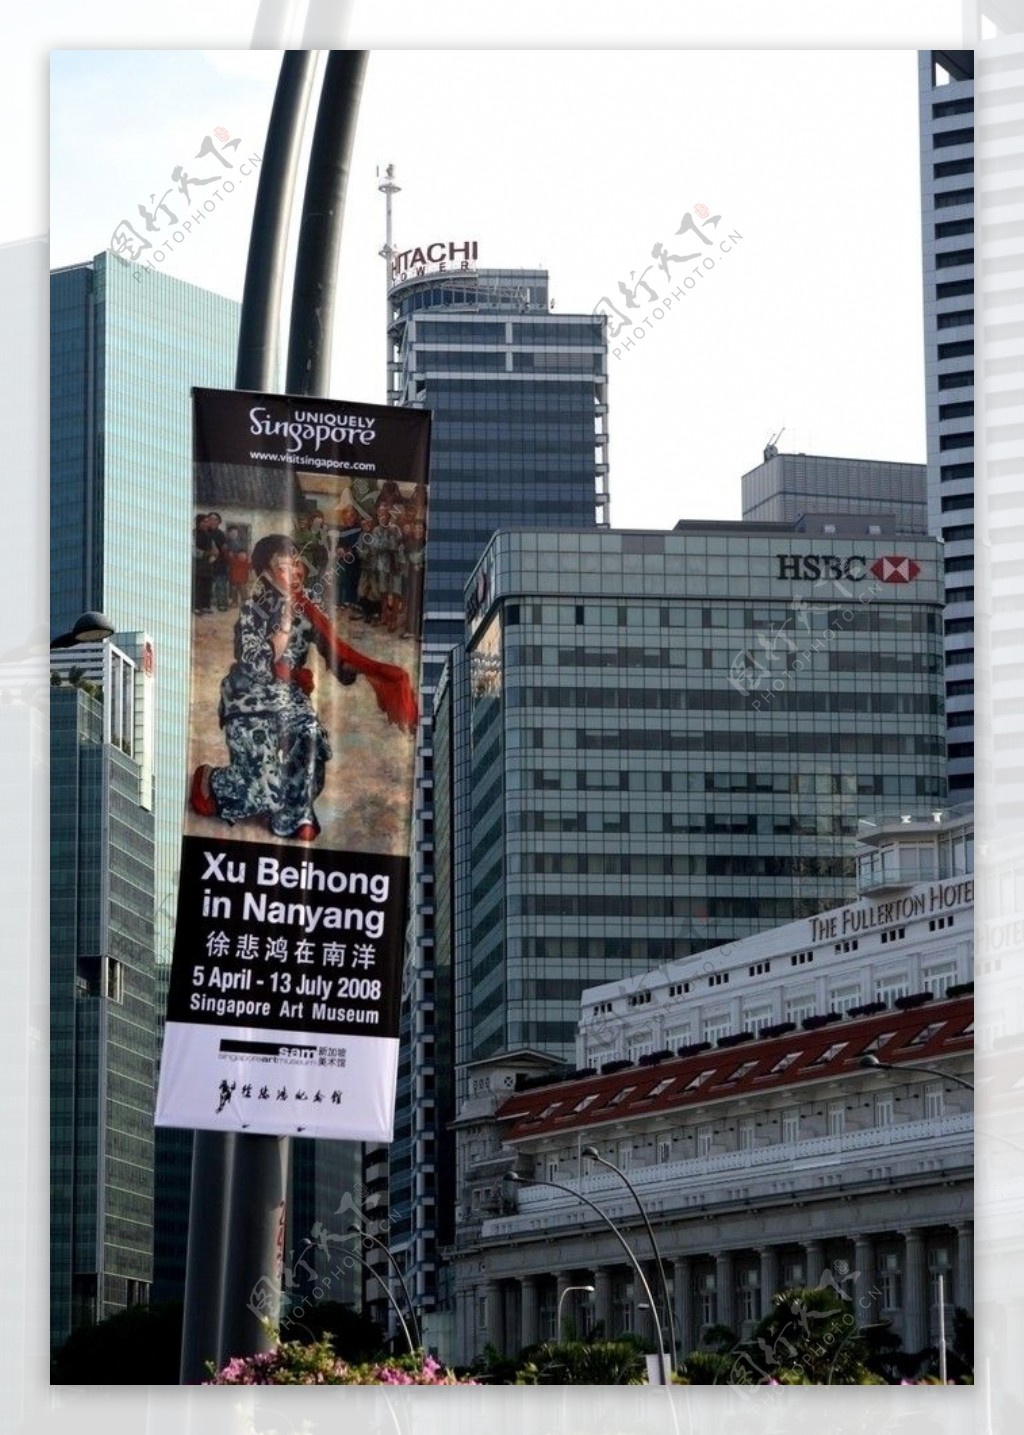 新加坡国立美术馆的徐悲鸿画展广告图片